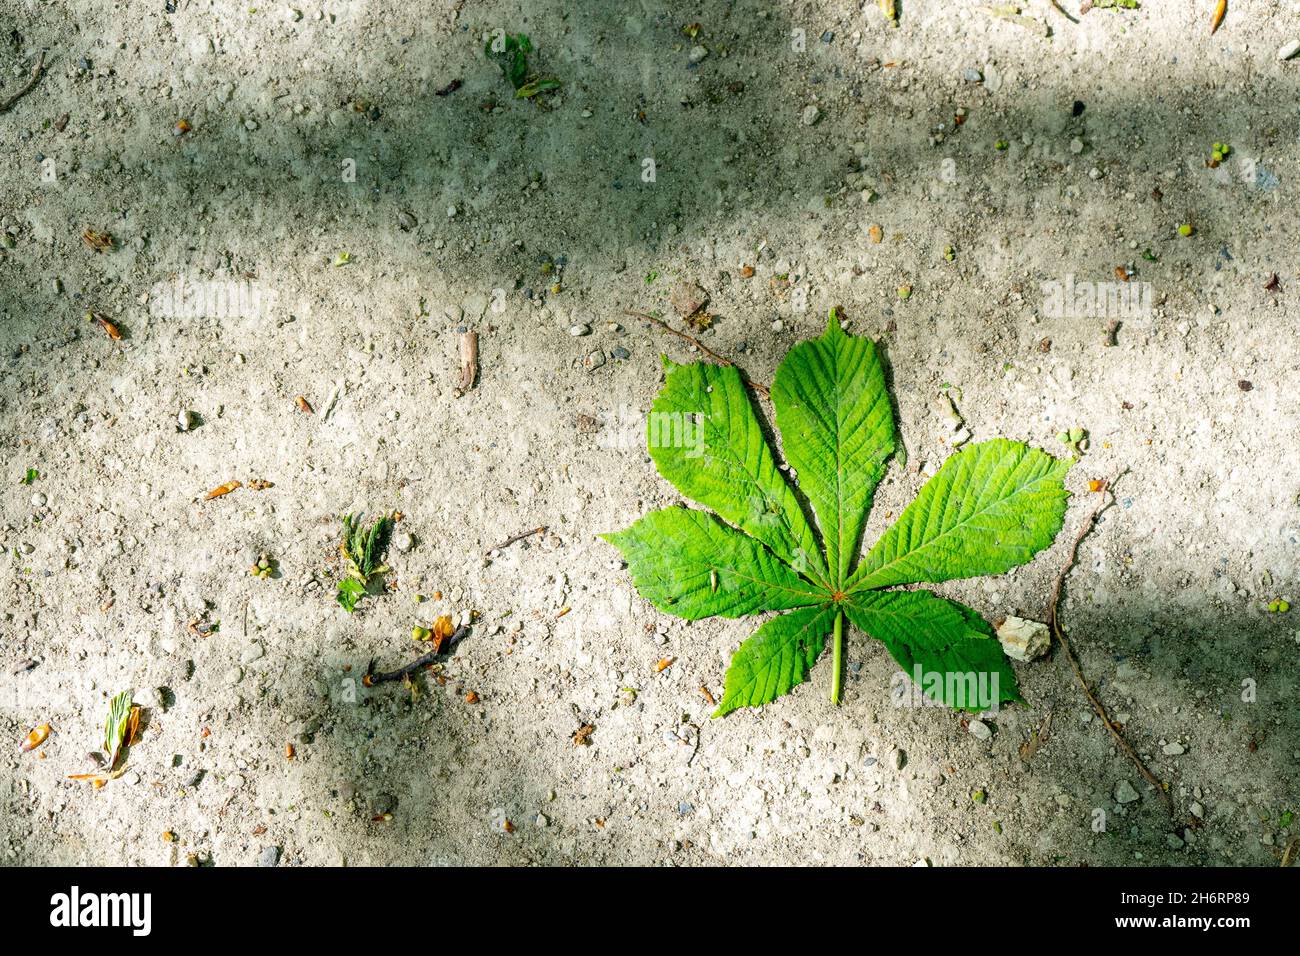 Kastanienblatt auf steinigem Untergrund. Stock Photo